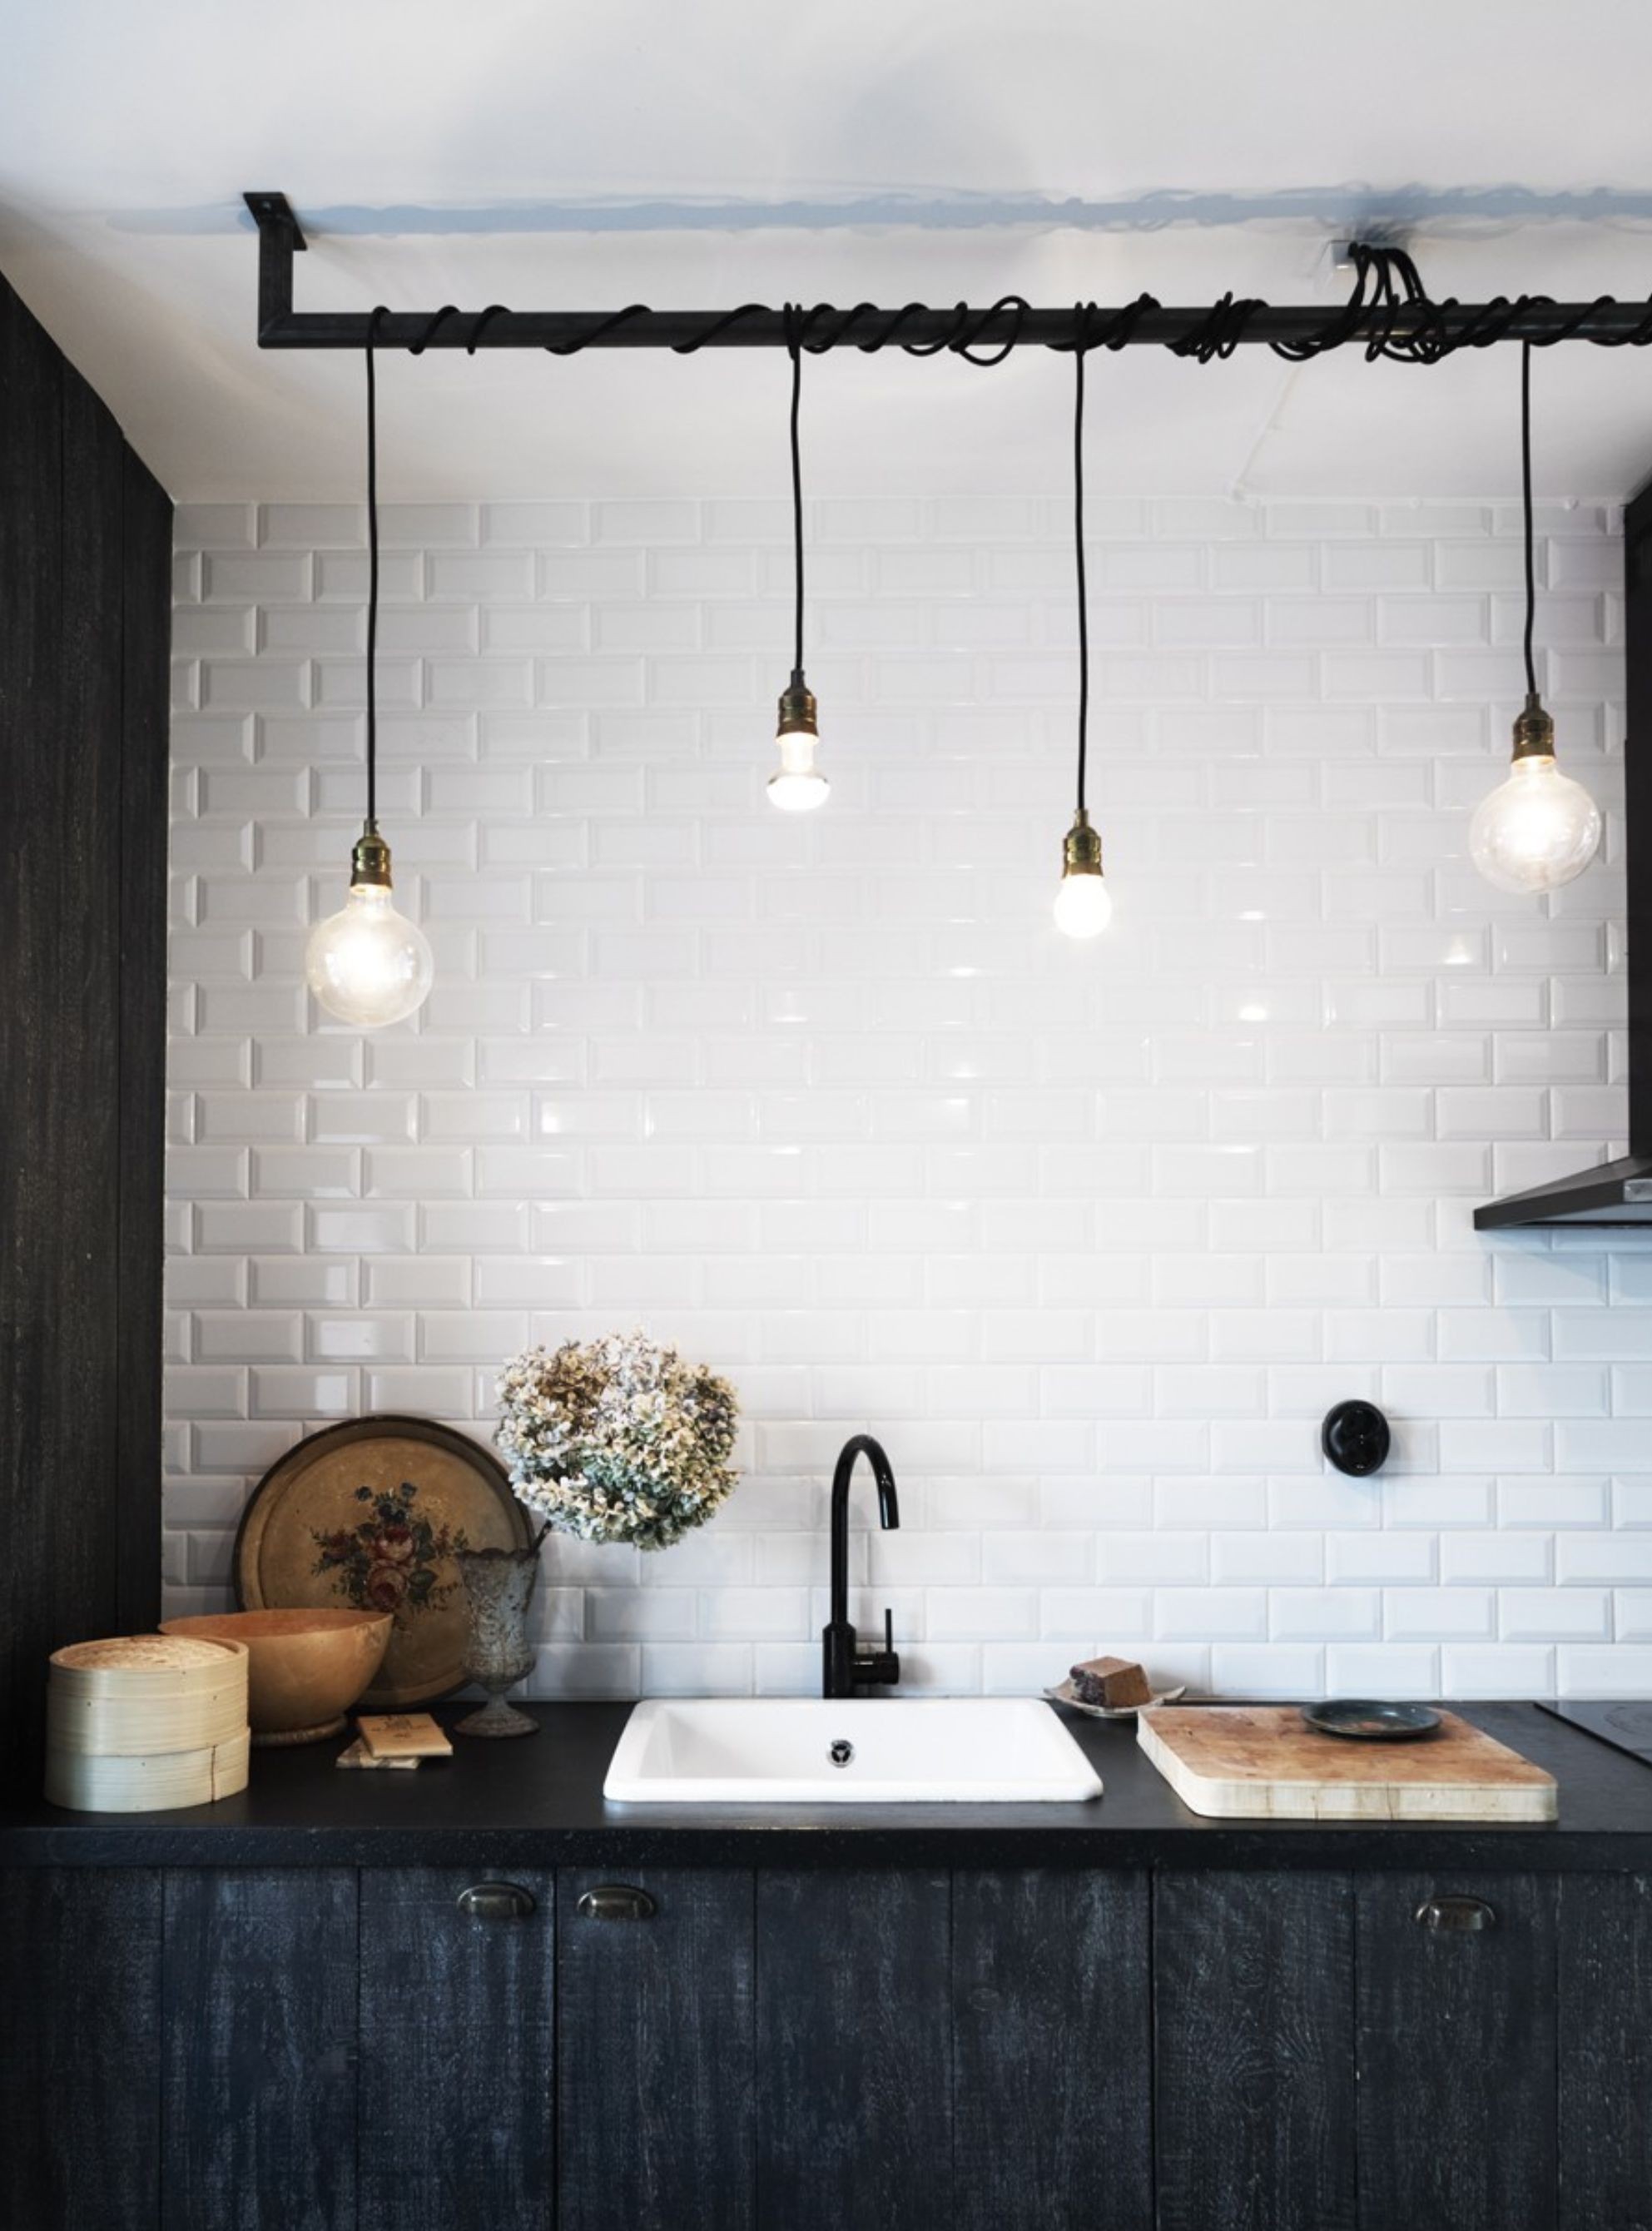 Pendentes na cozinha: 15 ideias inspiradoras para usar esse tipo de luminária (Foto: reprodução/ Pinterest)